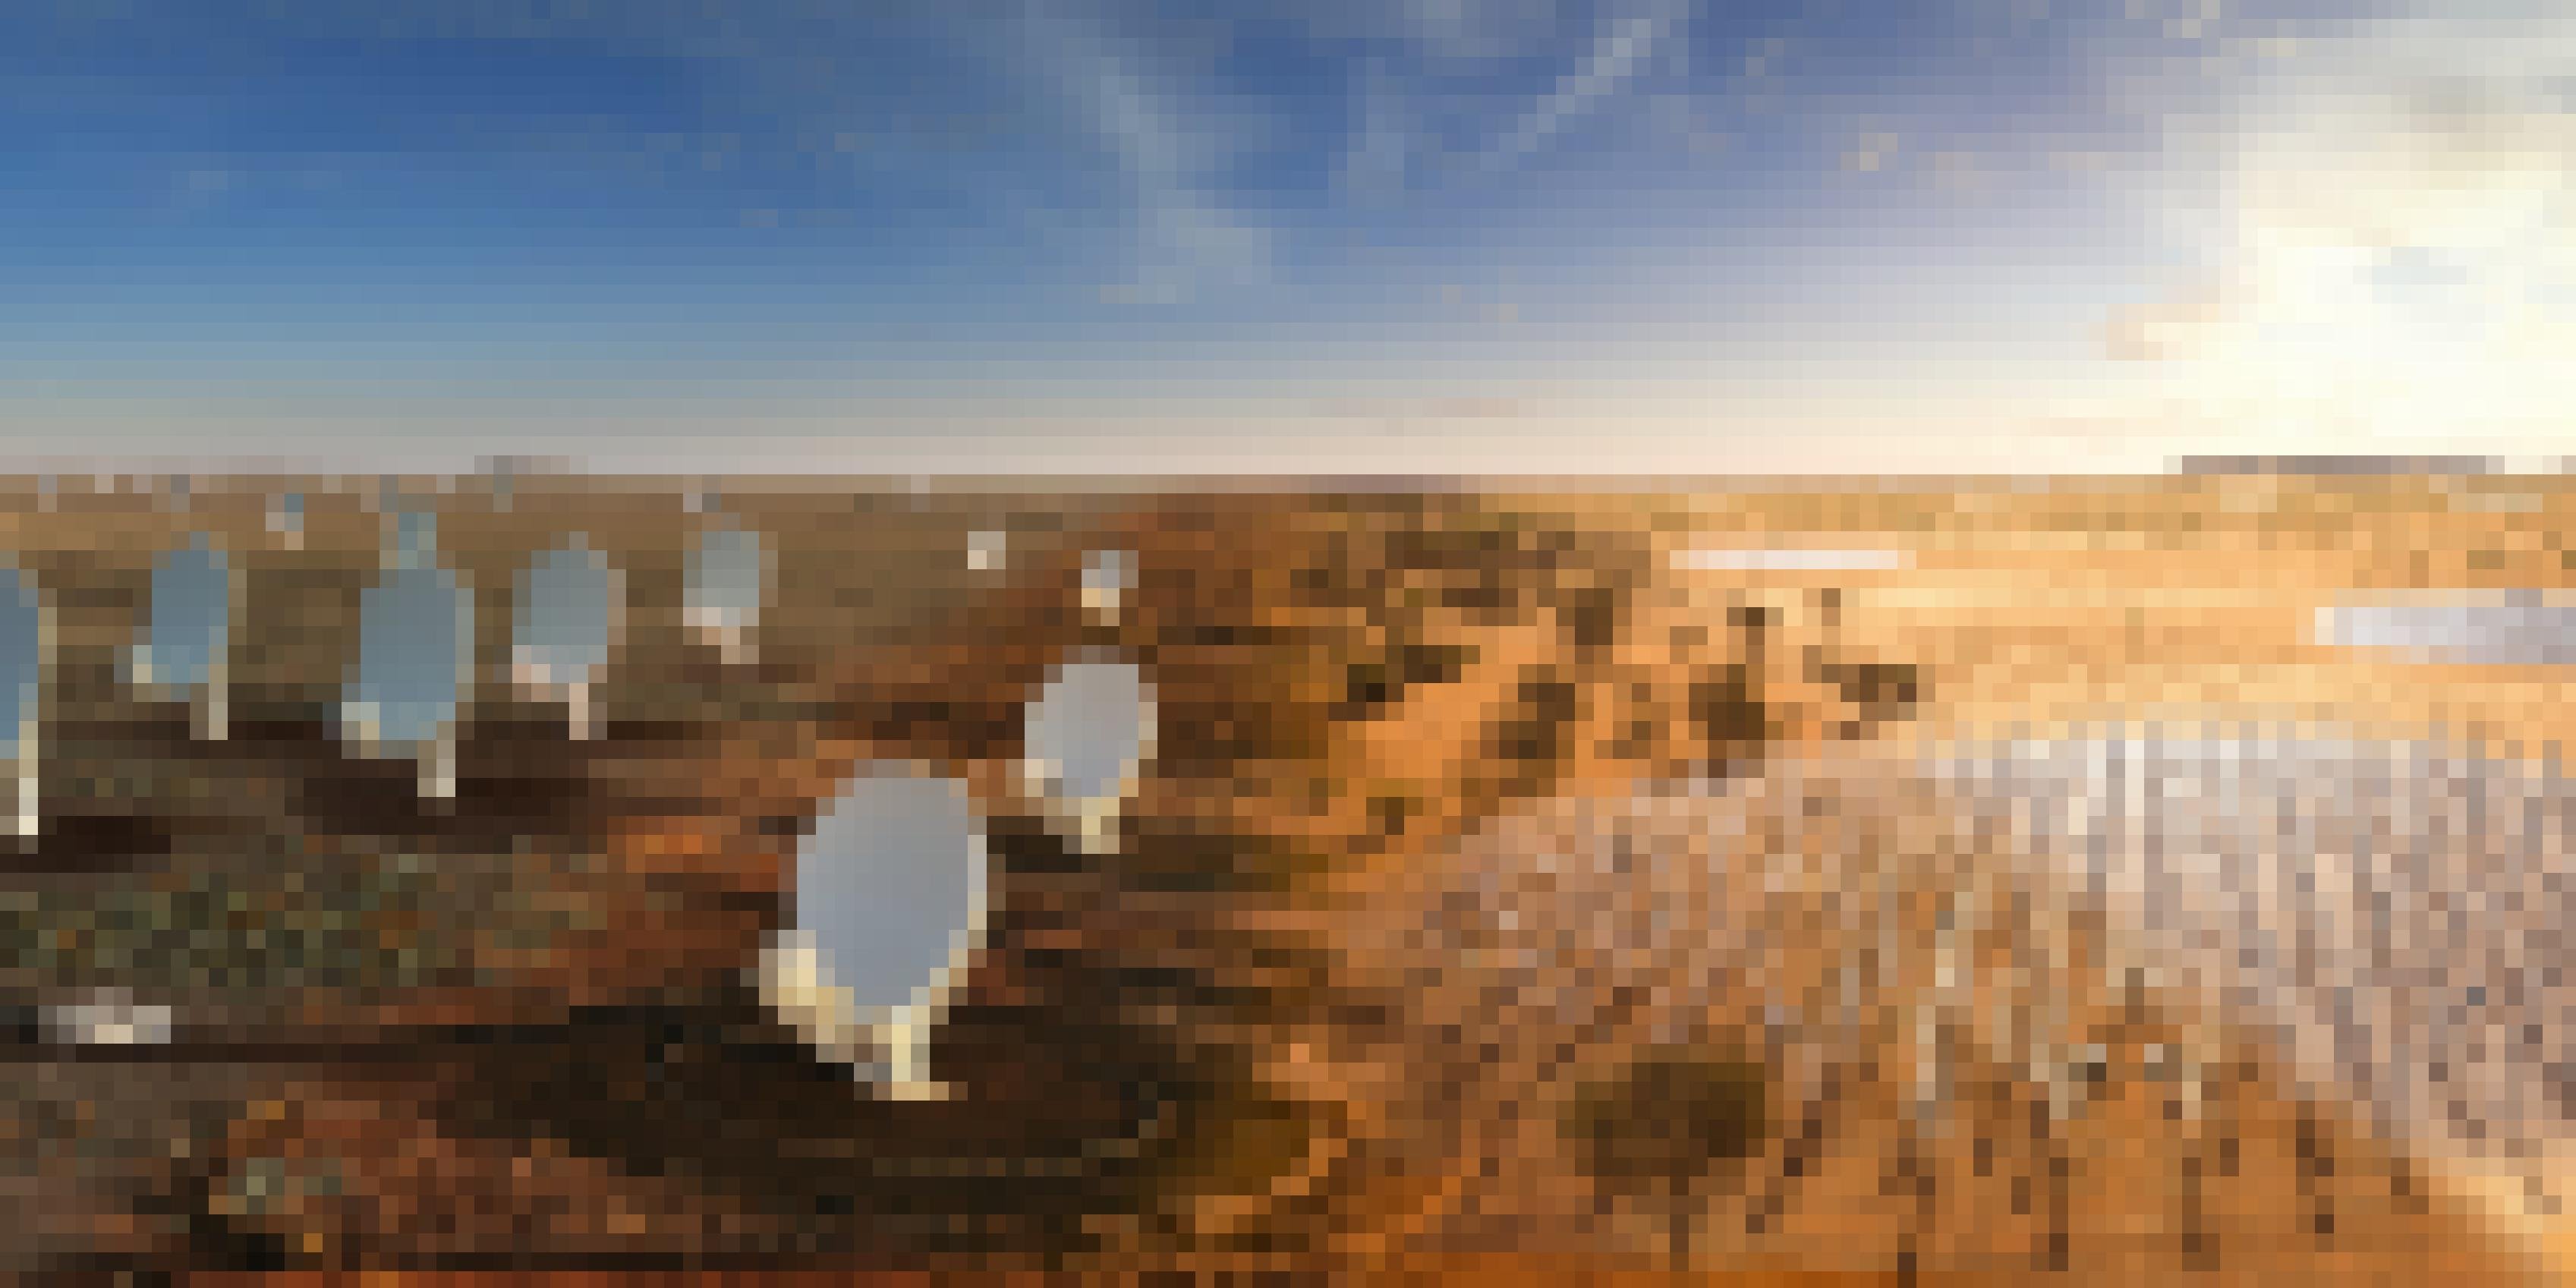 Eine Bildmontage zeigt links parabolförmige Radioteleskope, rechts stabförmige Antennen, die alle in einer Wüstenlandschaft stehen.